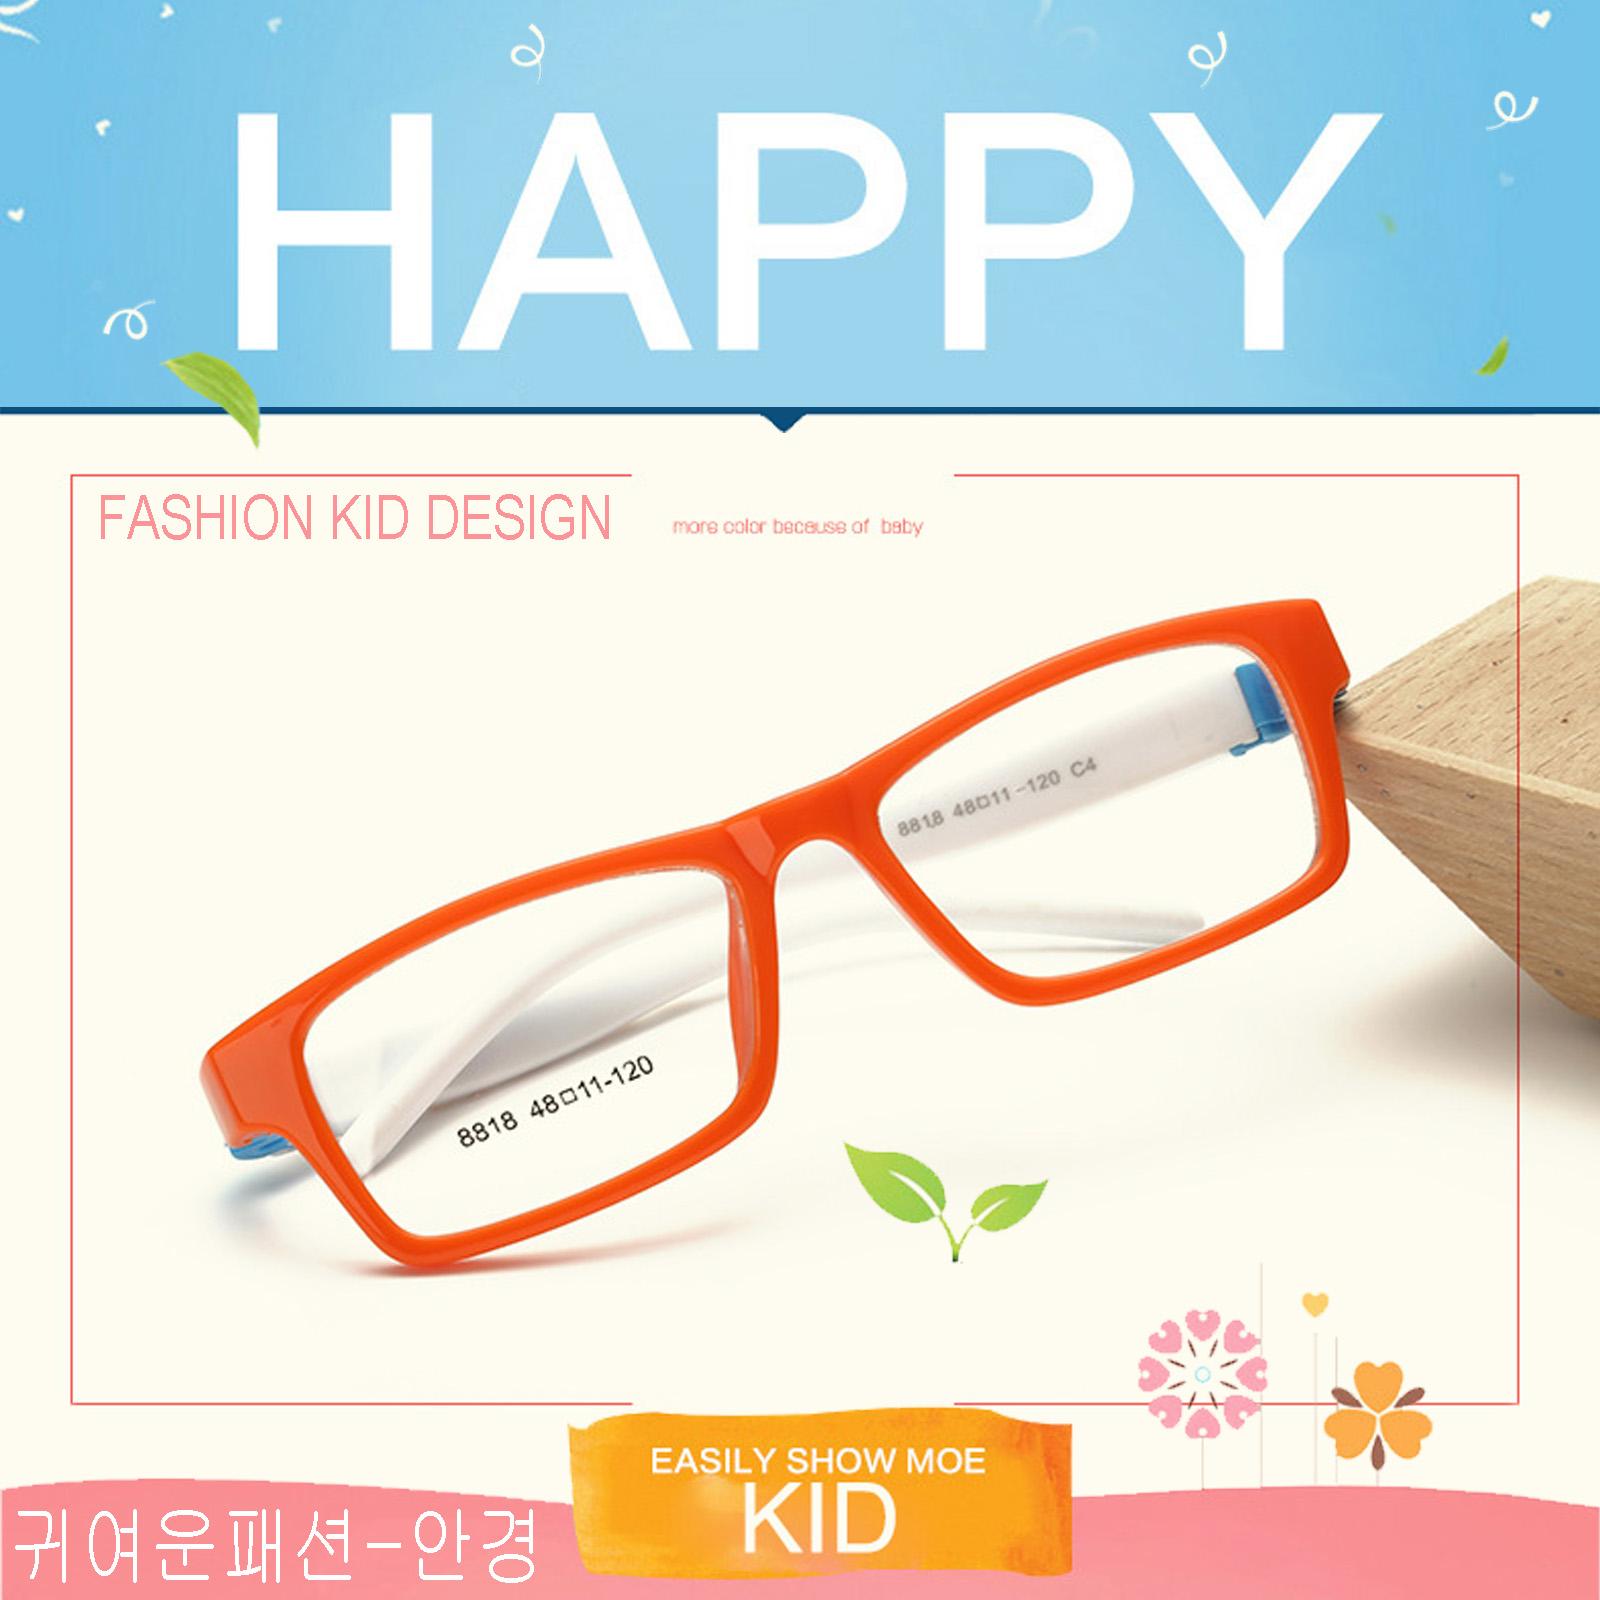 แว่นตาเกาหลีเด็ก Fashion Korea Children แว่นตาเด็ก รุ่น 8818 C-4 สีส้มขาขาว กรอบแว่นตาเด็ก Rectangle ทรงสี่เหลี่ยมผืนผ้า Eyeglass baby frame ( สำหรับตัดเลนส์ ) วัสดุ PC เบา ขาข้อต่อ Kid leg joints Plastic Grade A material Eyewear Top Glasses